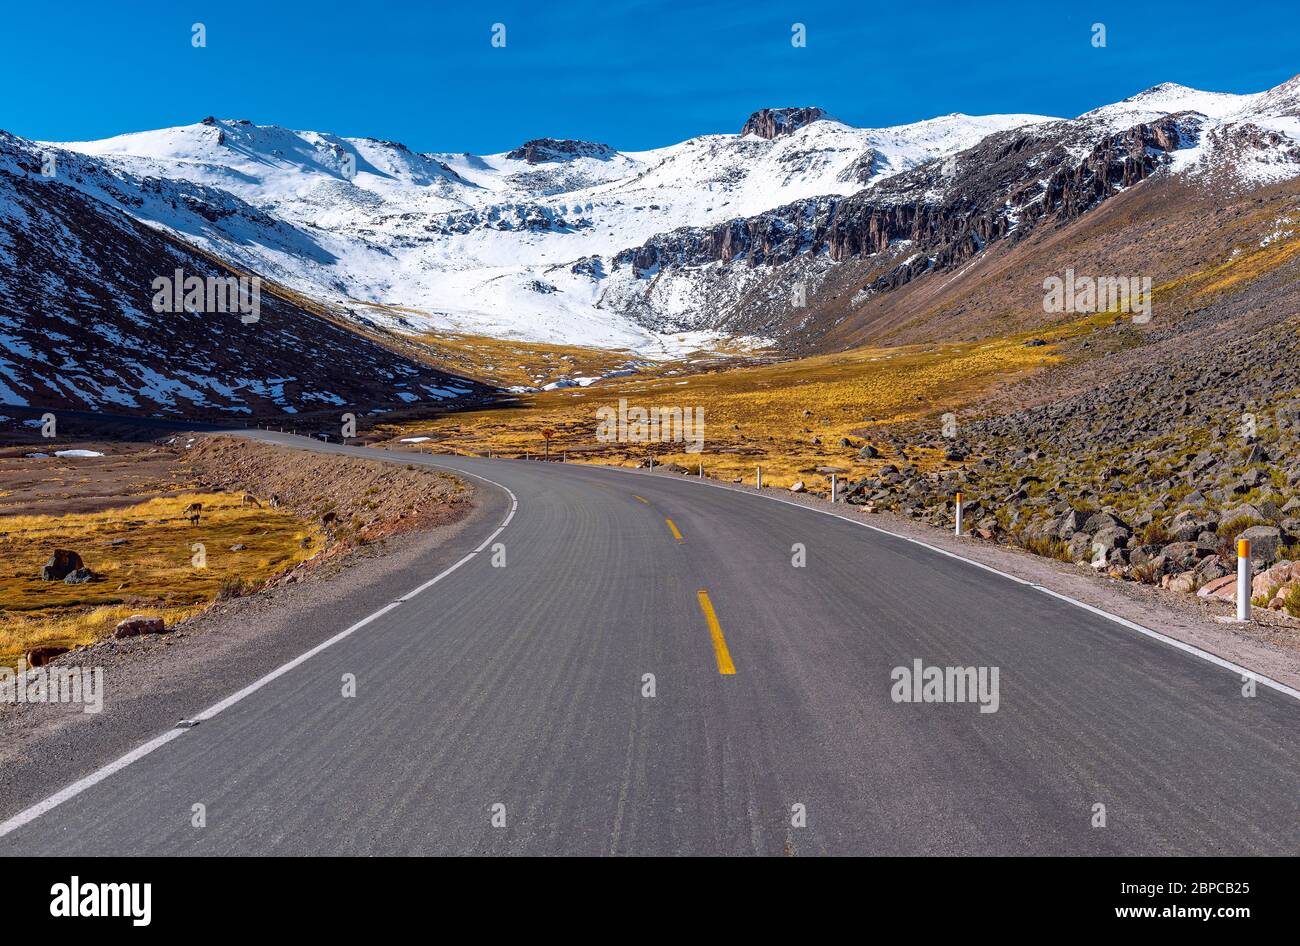 Sulla strada all'interno della riserva nazionale di Salinas y Aguada Blanca con alpaca e vicunas dalla strada, Andes catena montuosa, Arequipa, Perù. Foto Stock